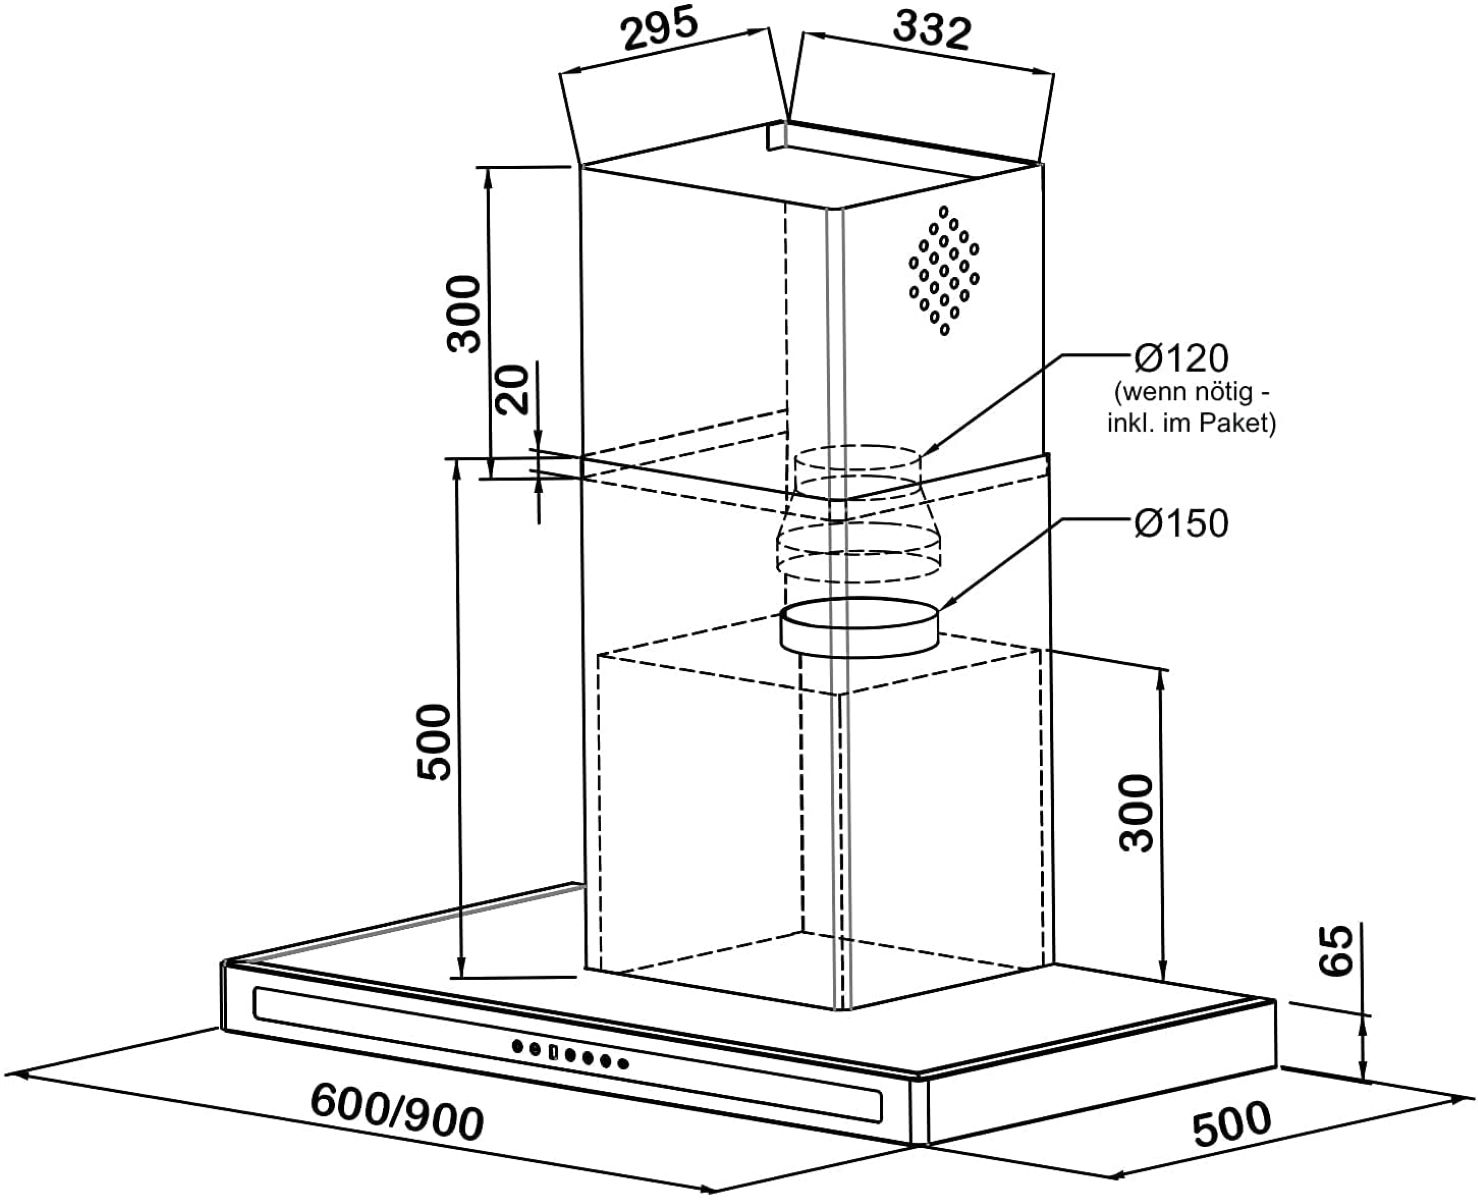 RADIALITIC (60 cm breit, Leisetechnologie F10S, 50 cm tief) KÜGERR Patentierte Dunstabzugshaube